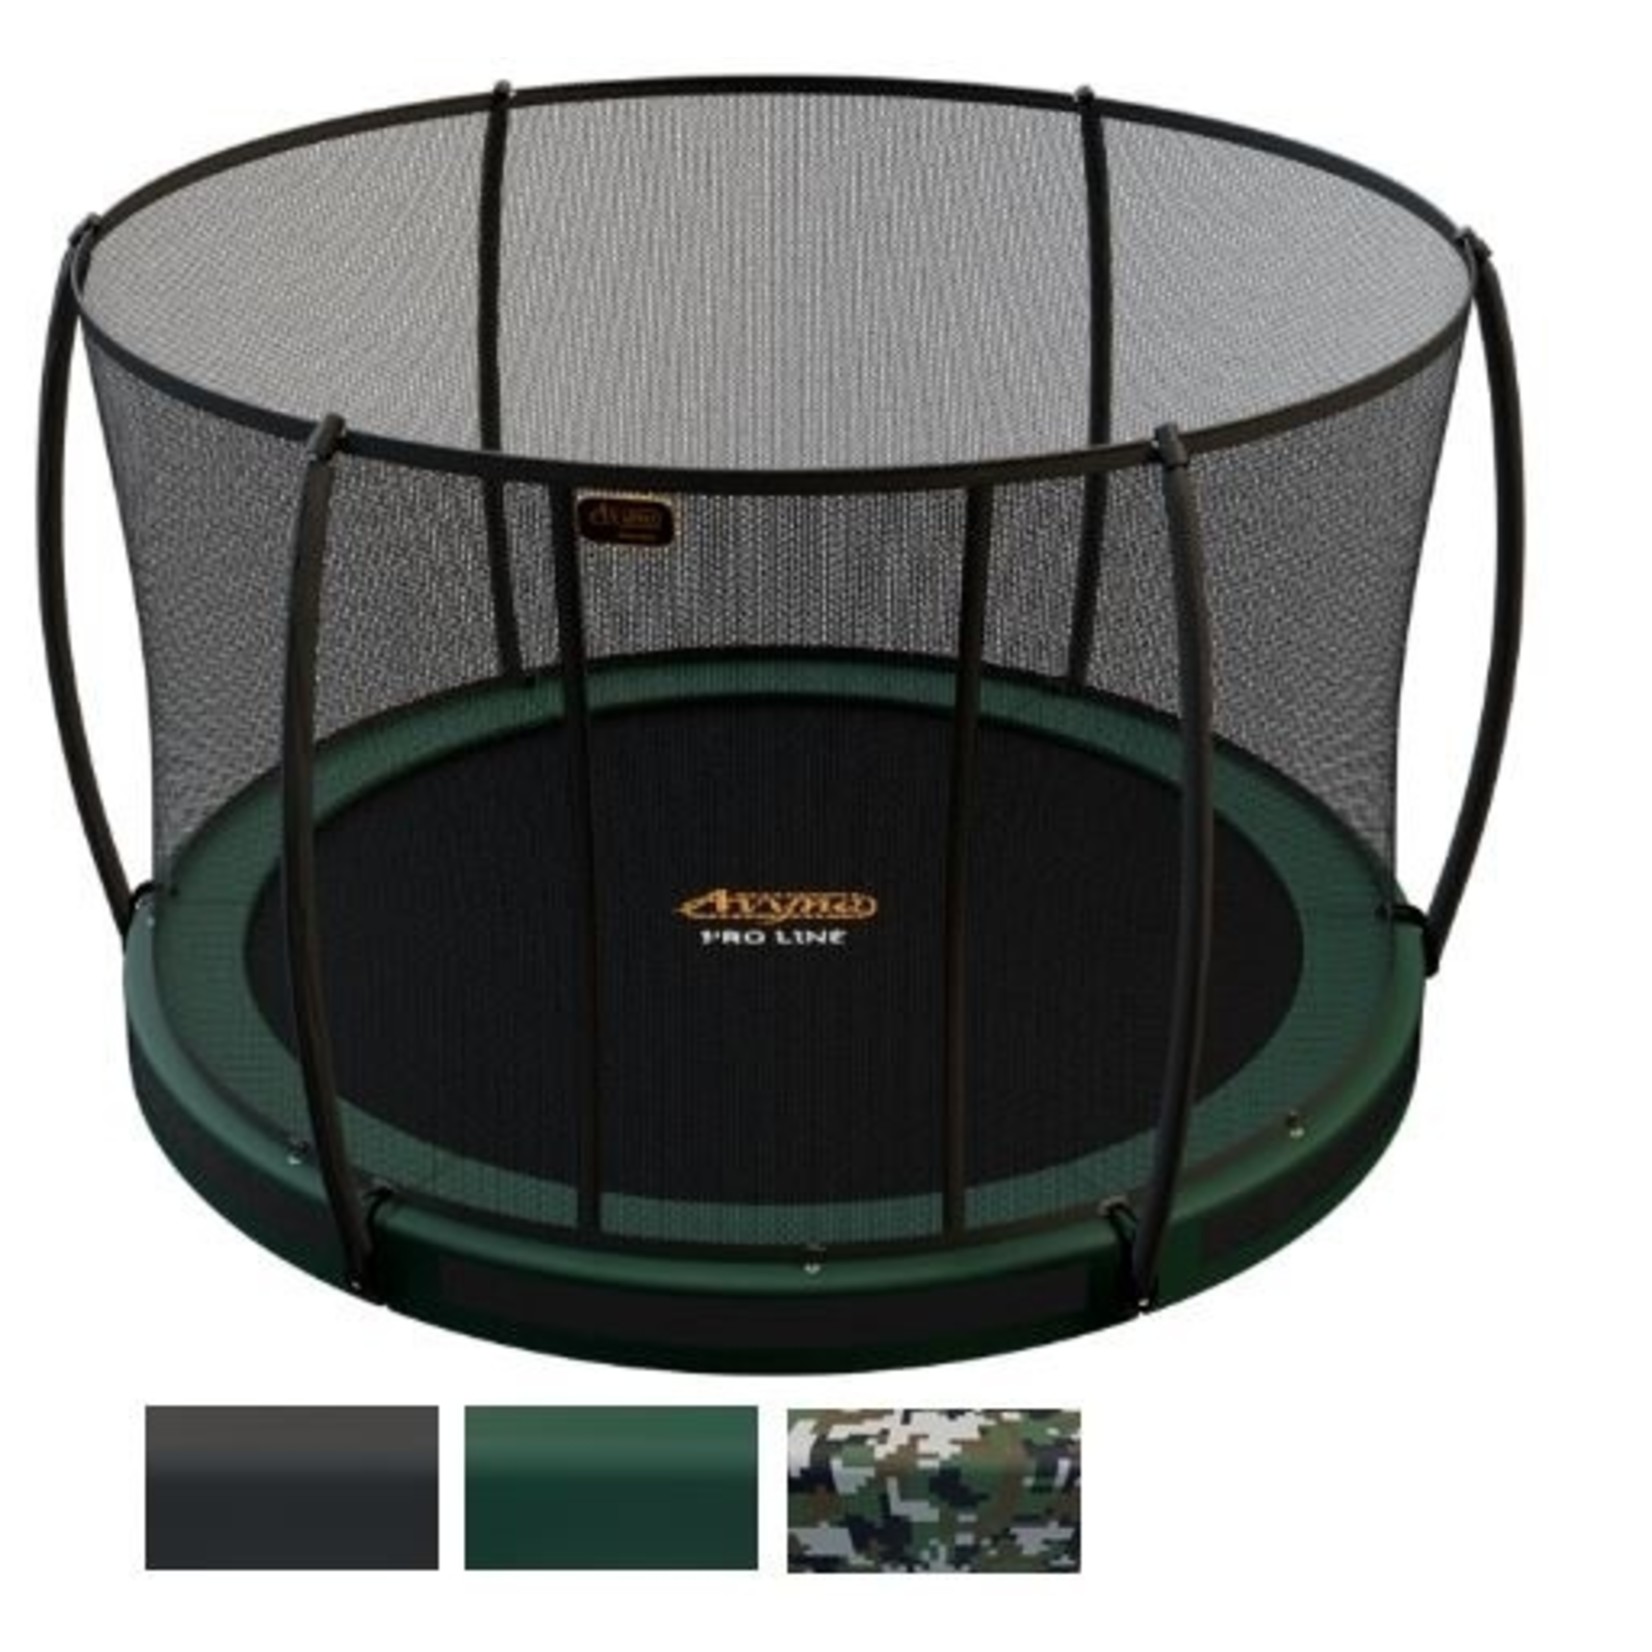 Avyna De ideale ronde trampoline voor in de grond, Inground : de Avyna Pro-Line van Ø 305 cm